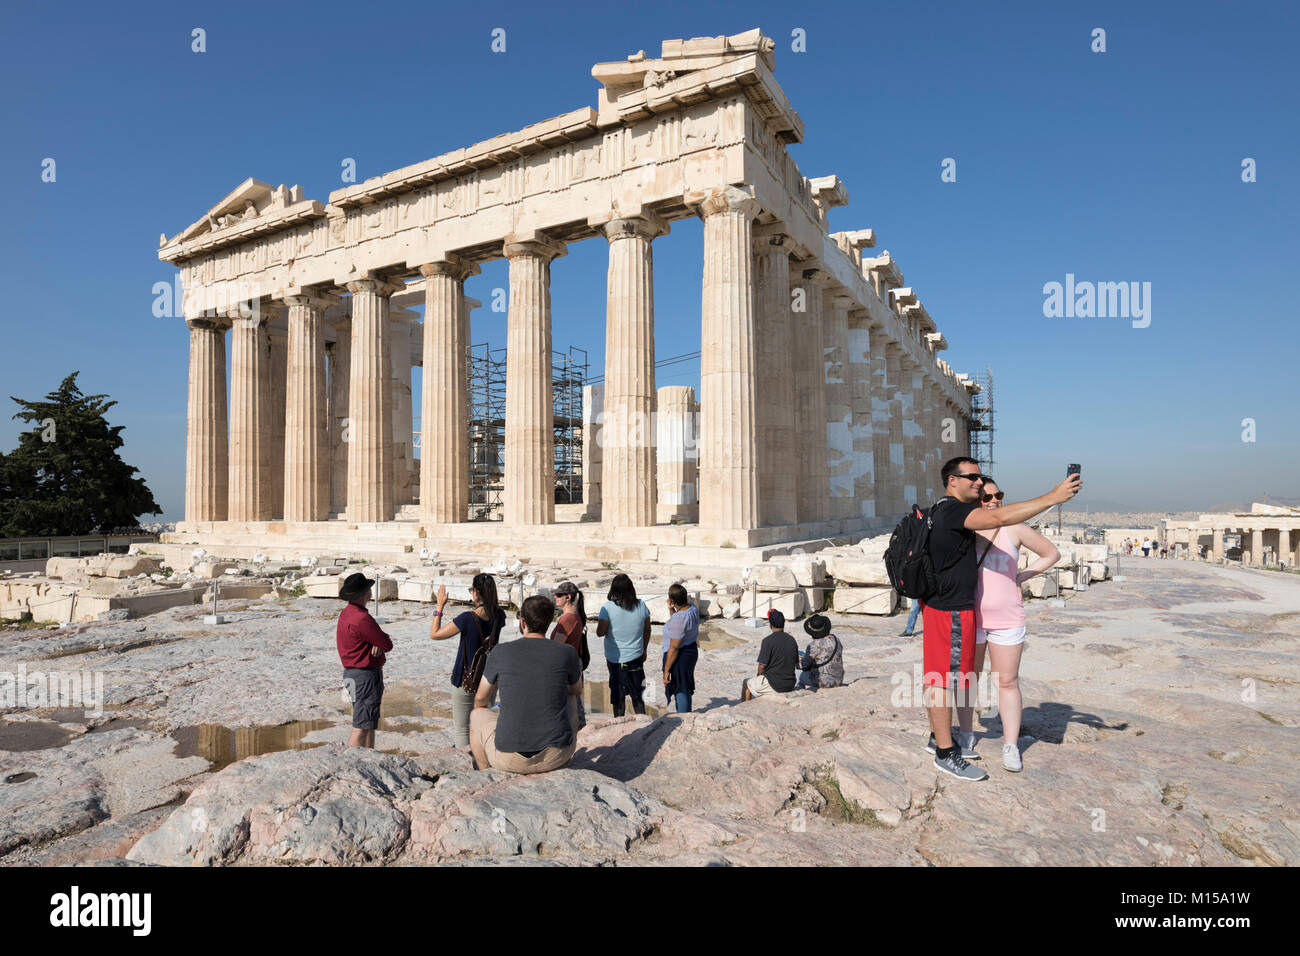 The ancient Parthenon atop the Acropolis, Athens, Greece, Europe Stock Photo